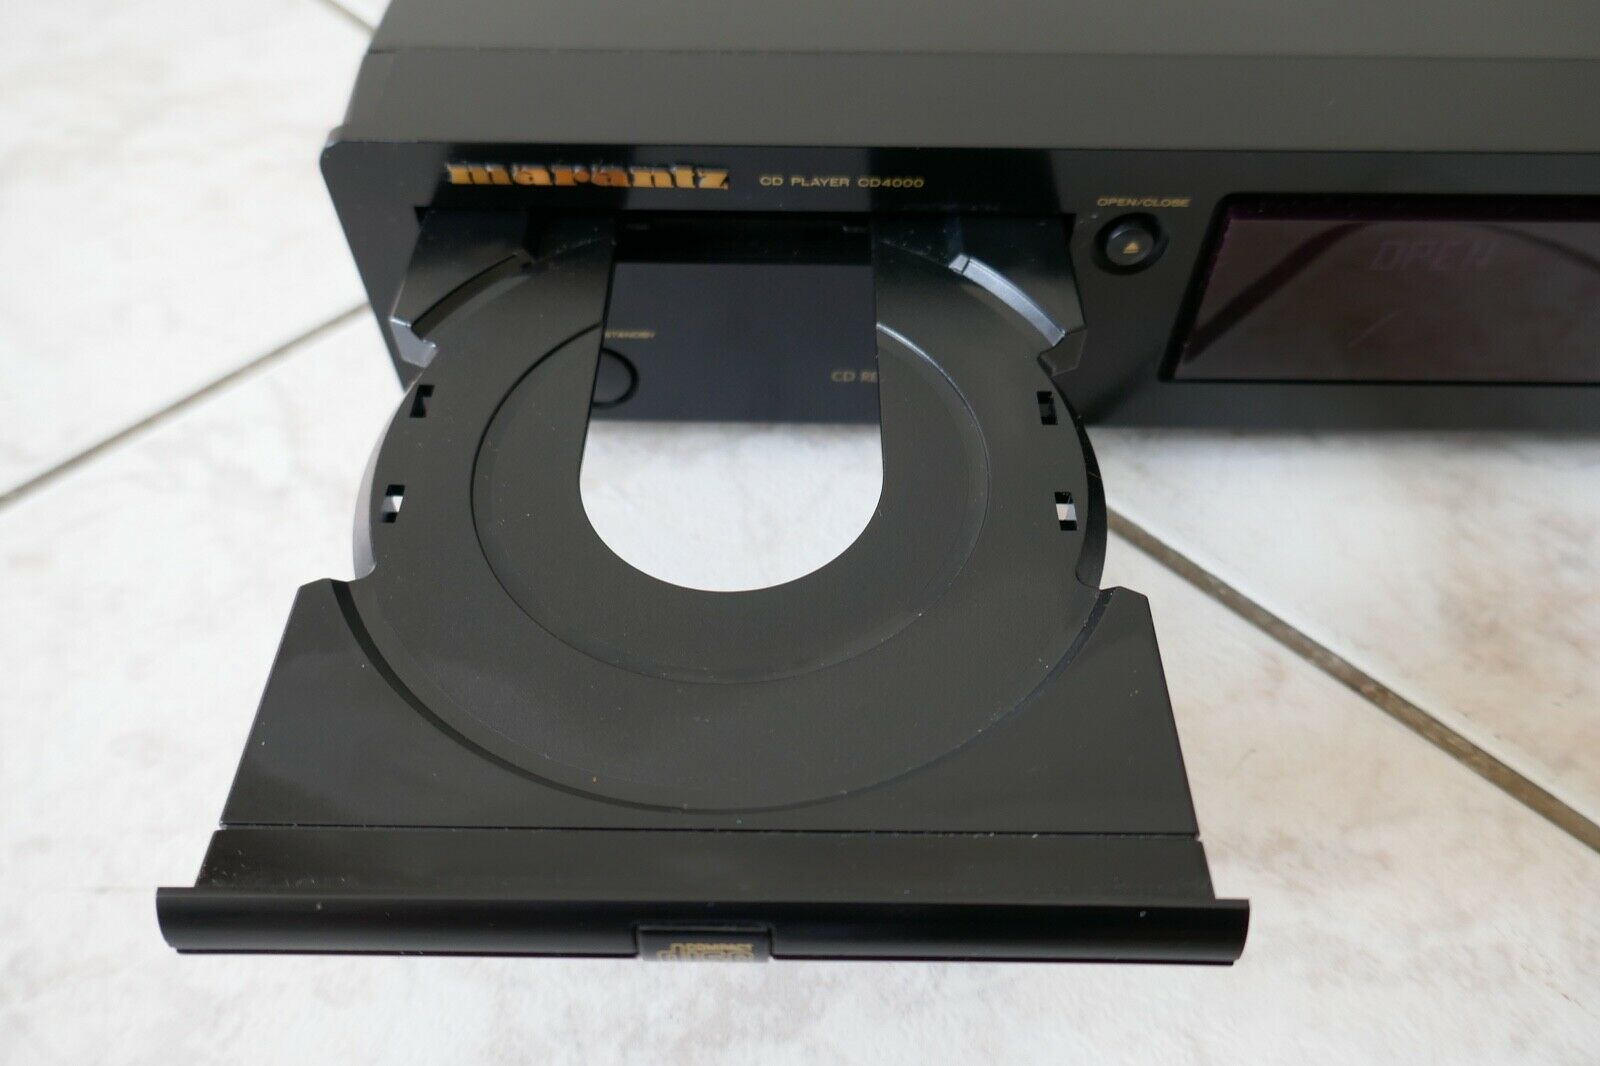 lecteur compact disc player marantz cd4000 vintage occasion